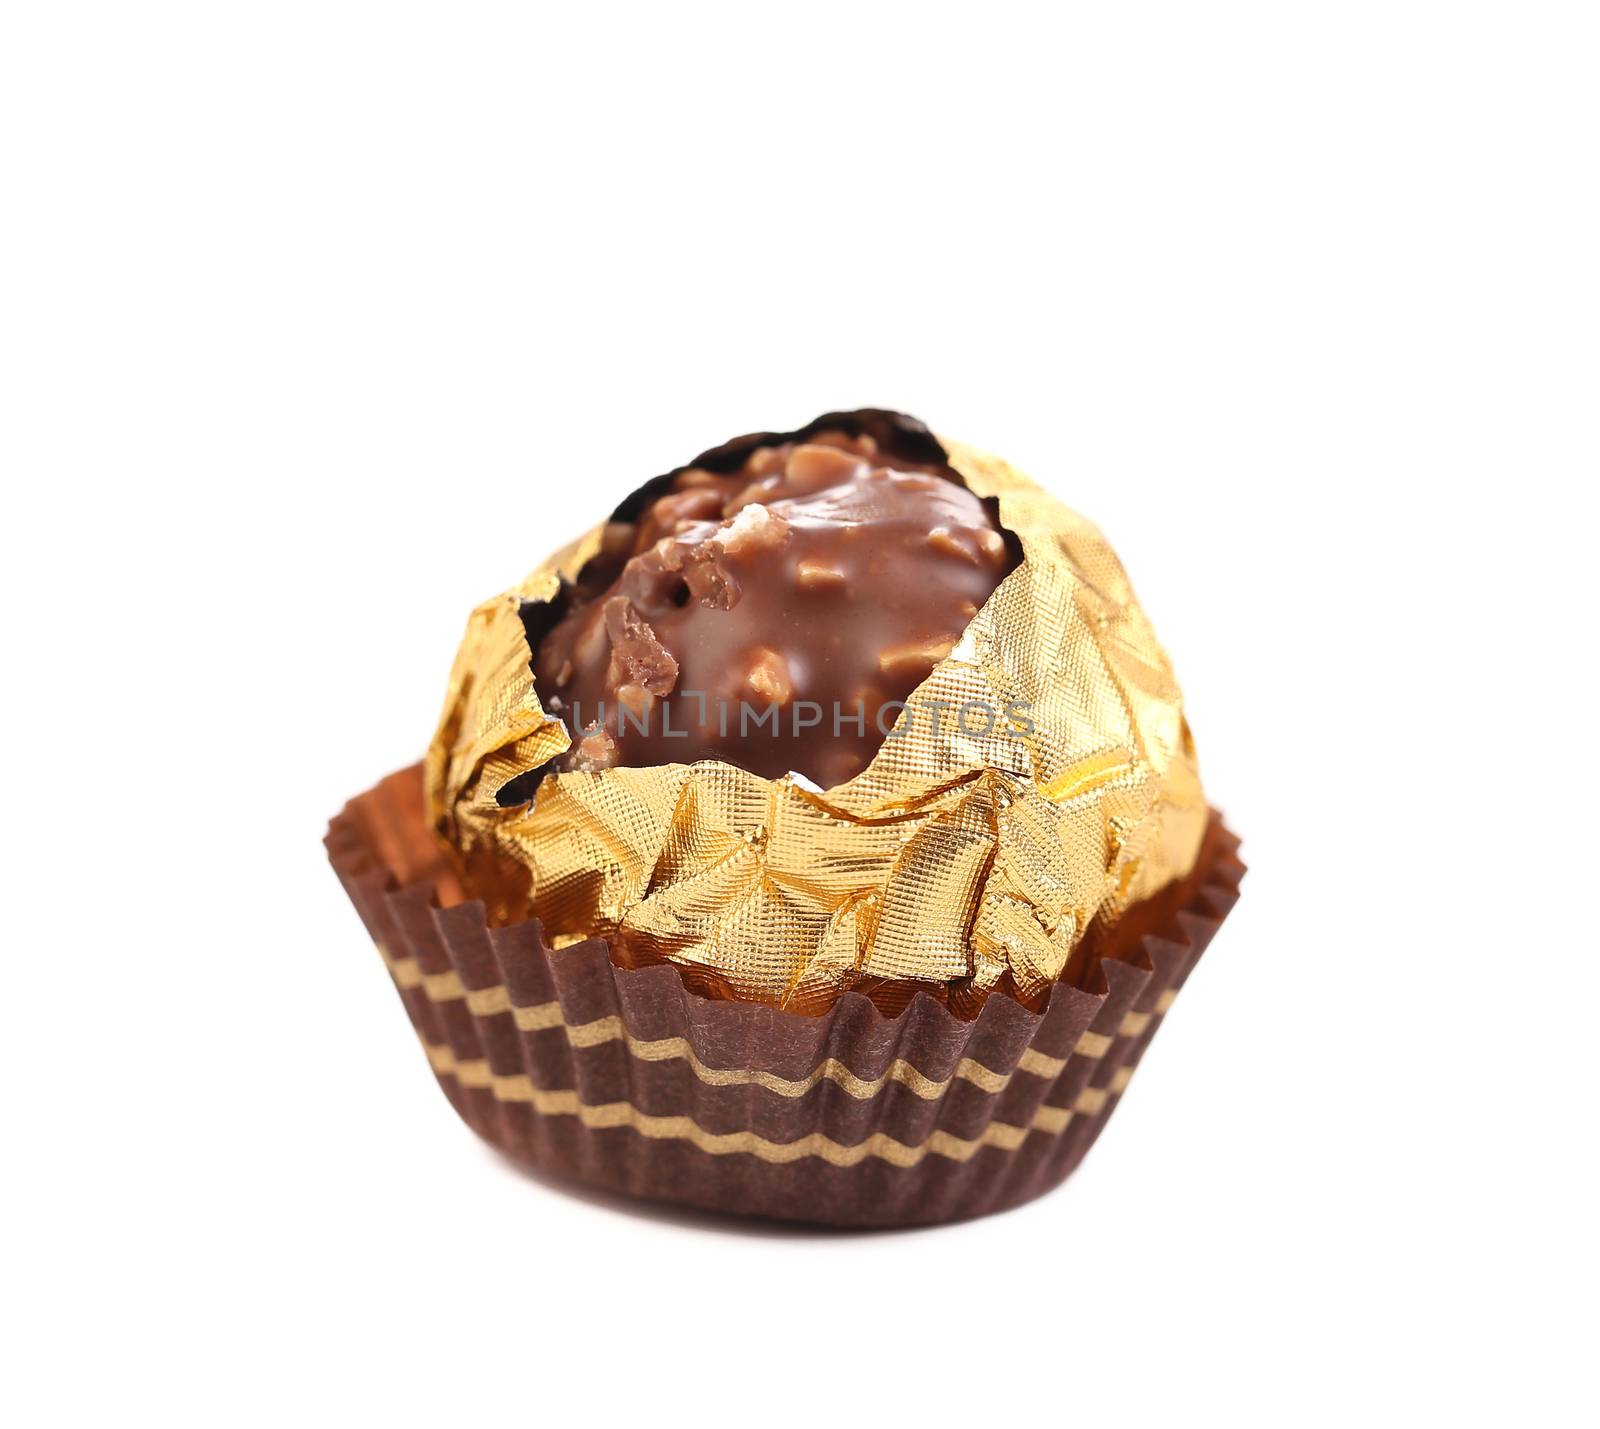 Chocolate gold foil bonbon. by indigolotos